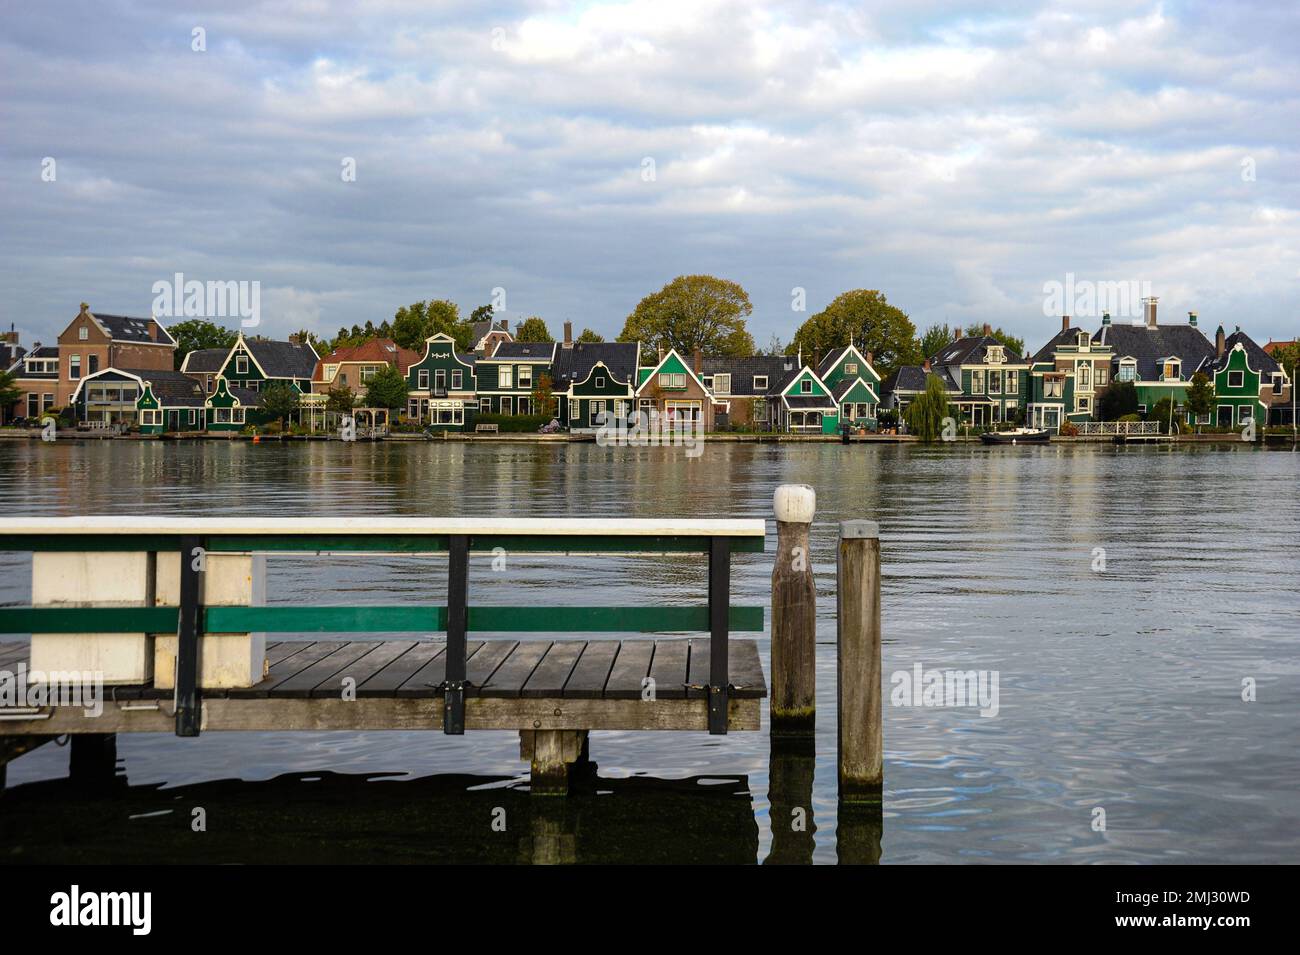 Eine Reihe von alten niederländischen Architekturhäusern säumen den Kanal. Stockfoto